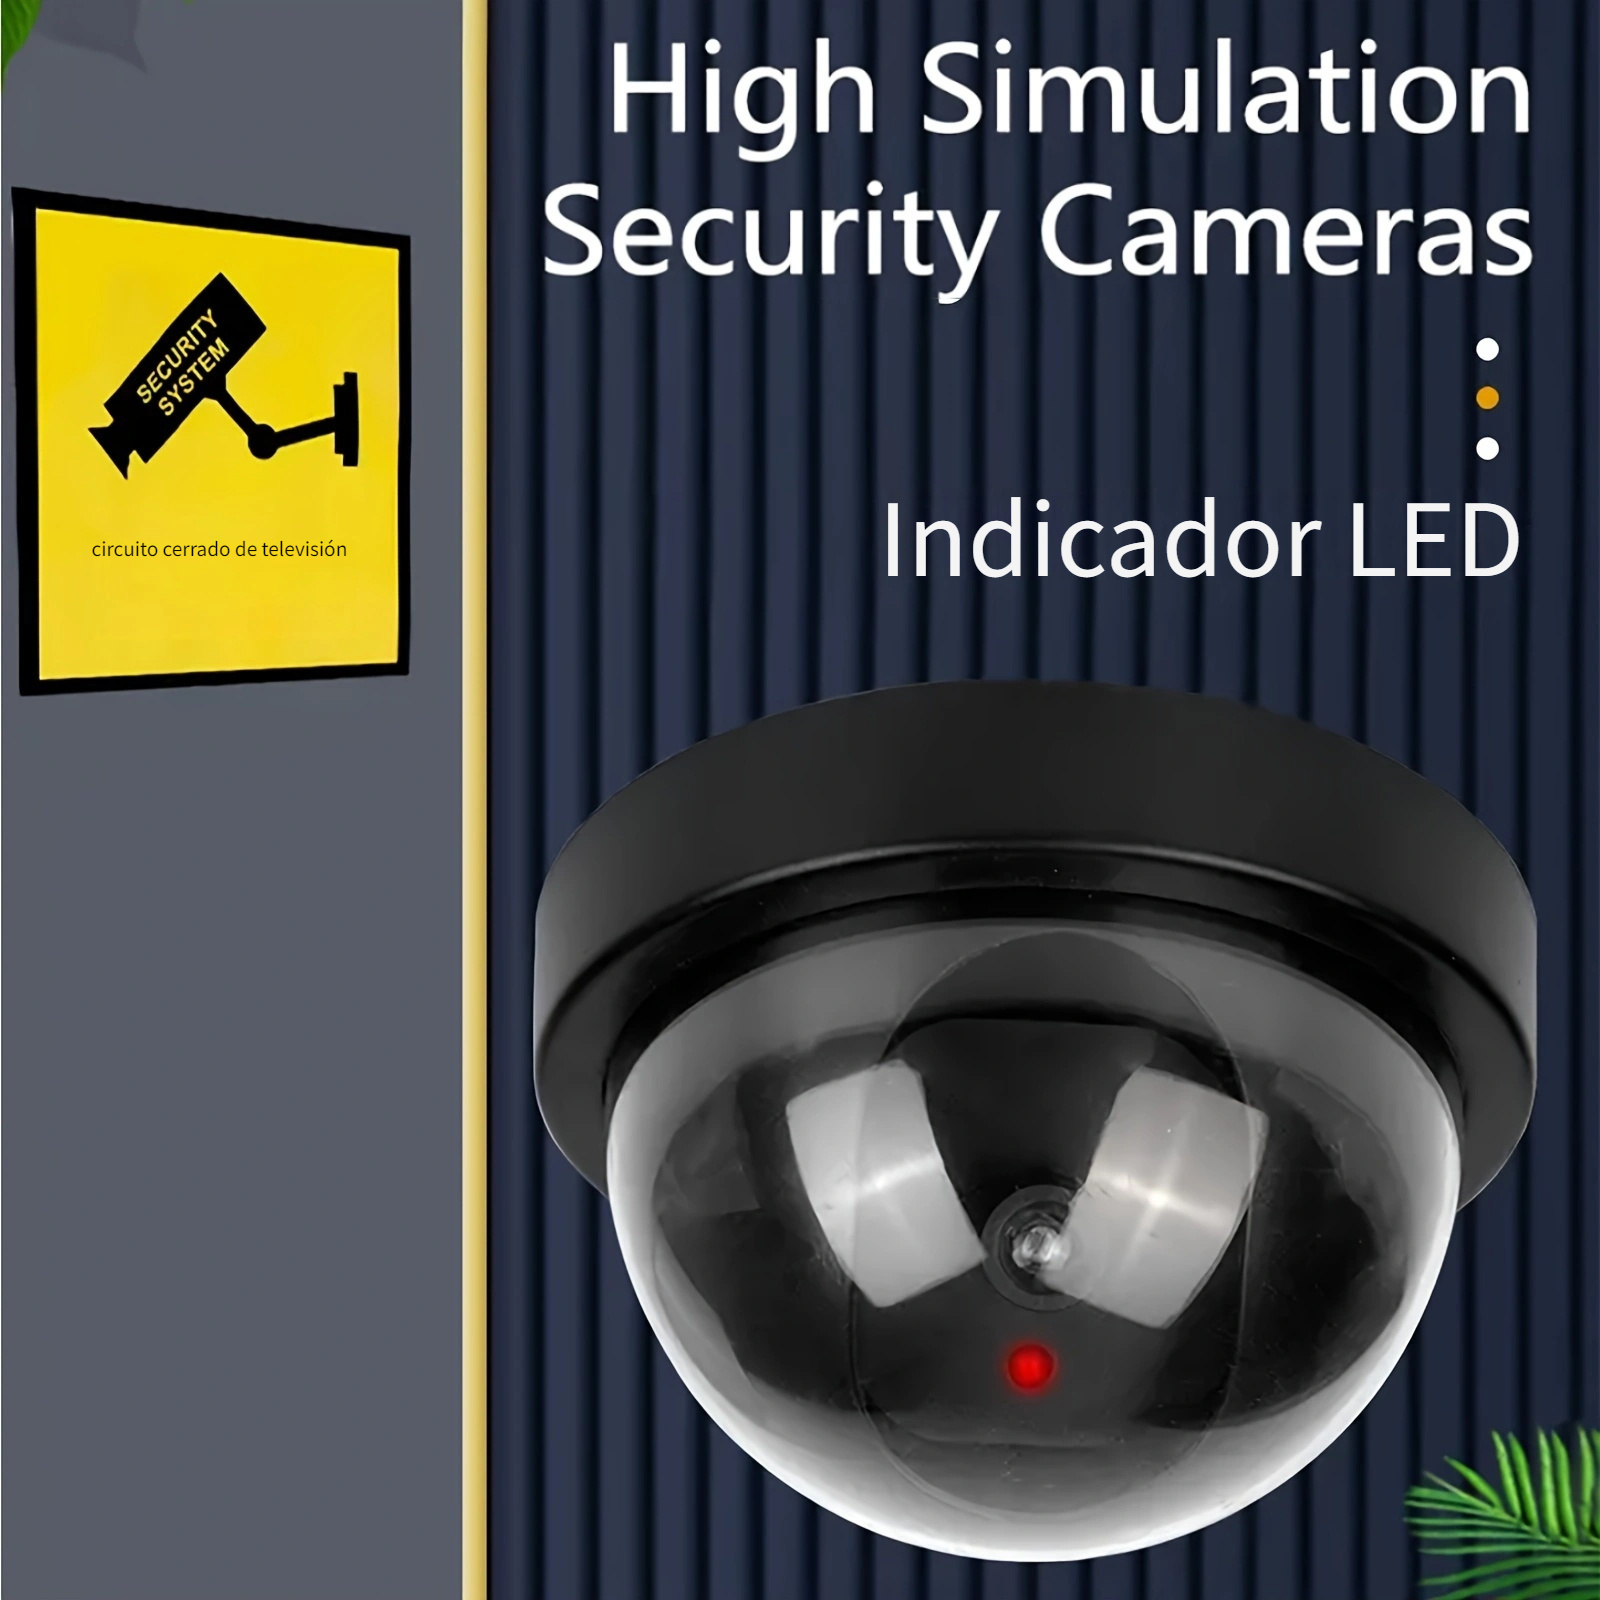 Camaras Falsas De Seguridad Sistema Vigilancia Para La Casa Fake Security  Camera